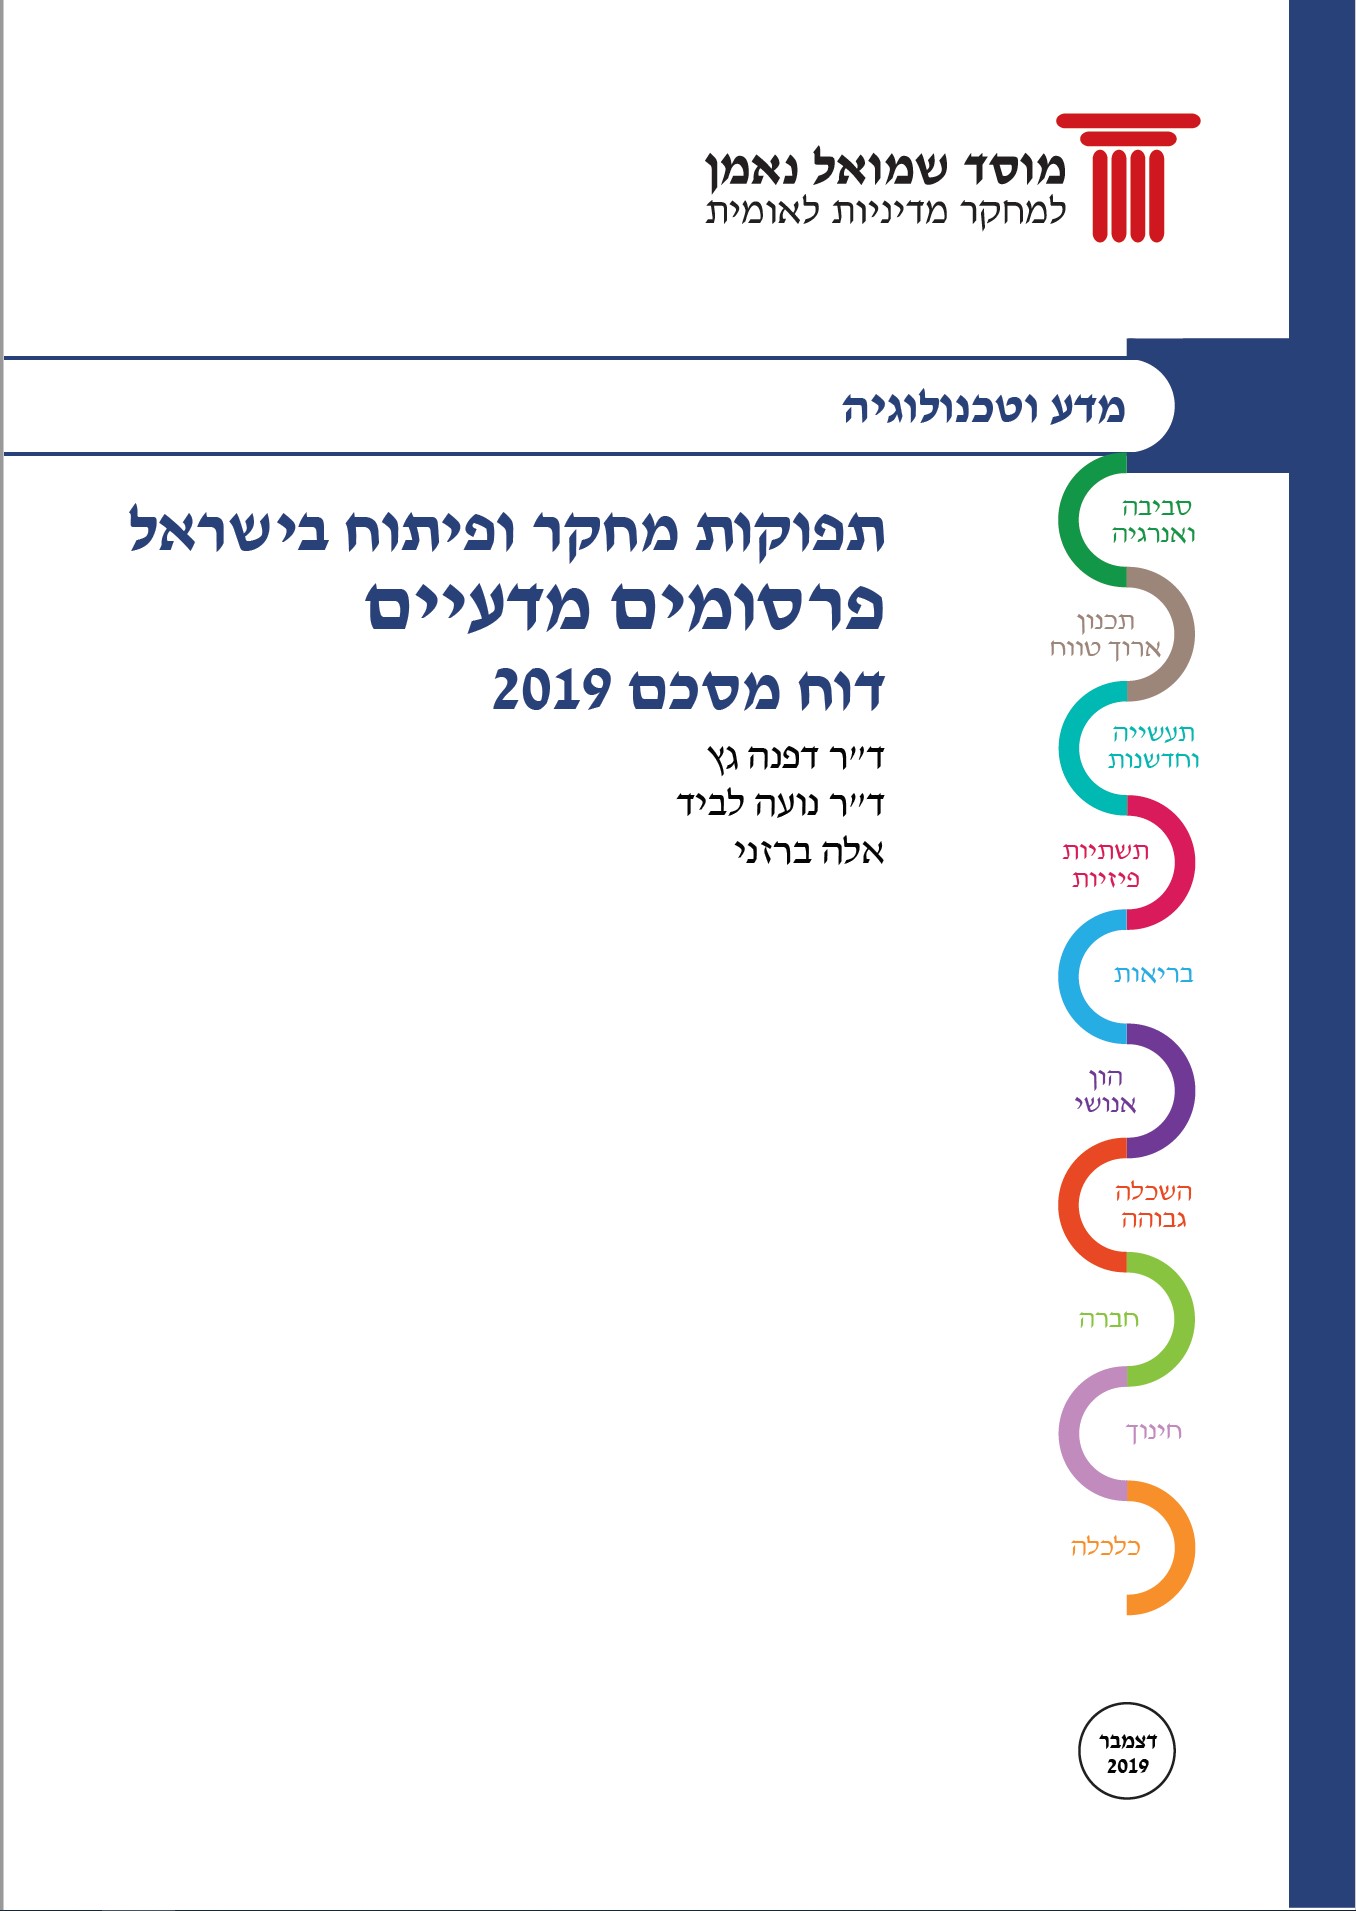 תפוקות מחקר ופיתוח בישראל  / פרסומים מדעיים -  2019